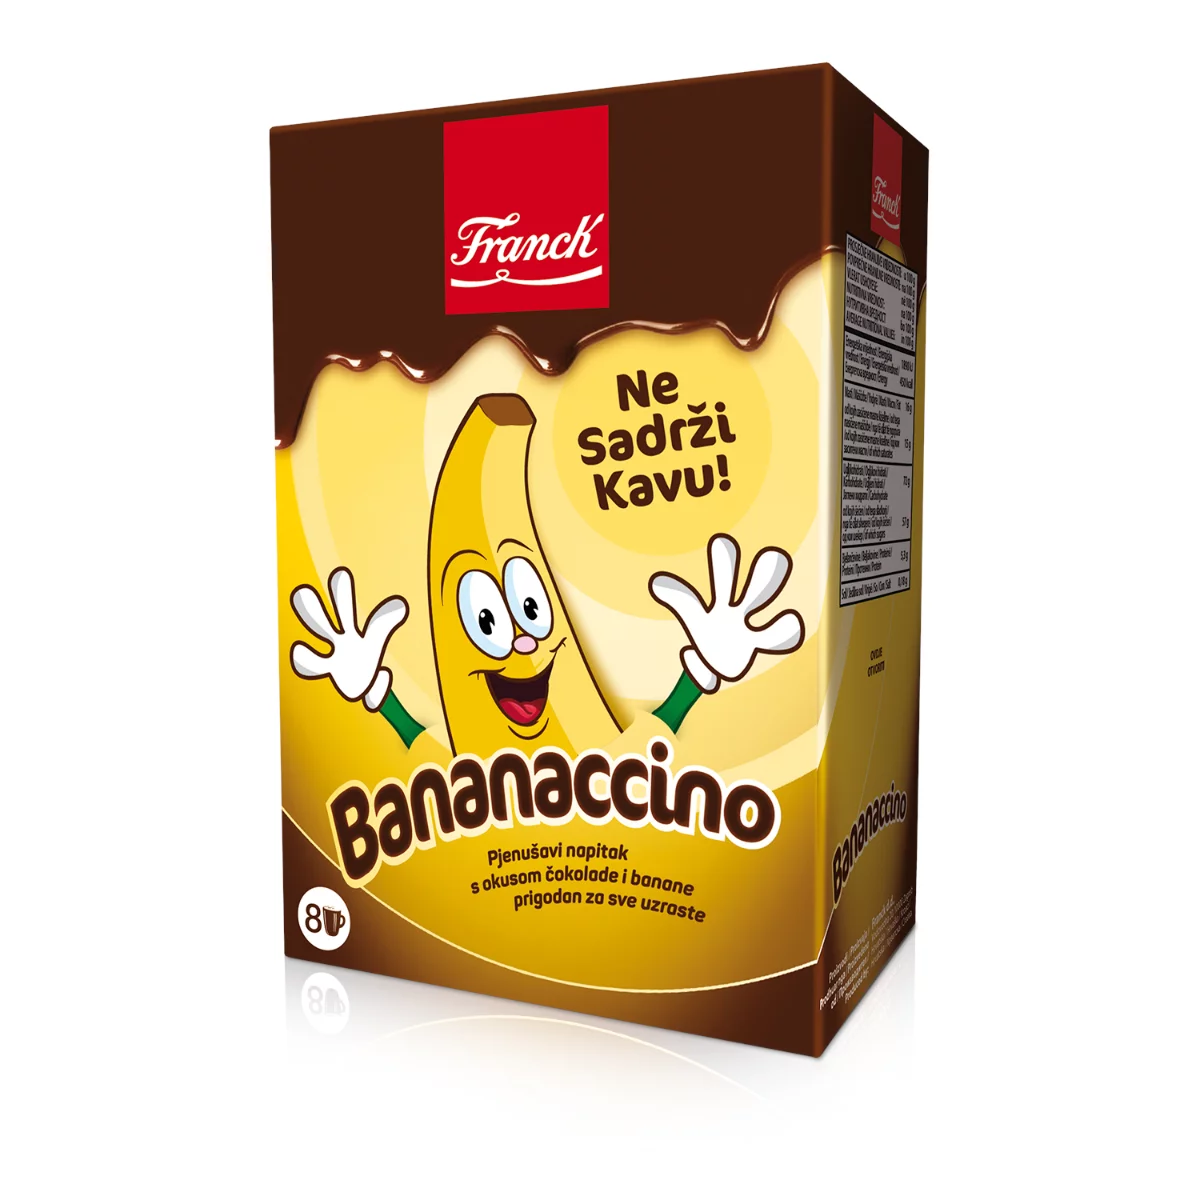 Franck instant cappuccino 8x20g Banános csokoládé koffeinmentes